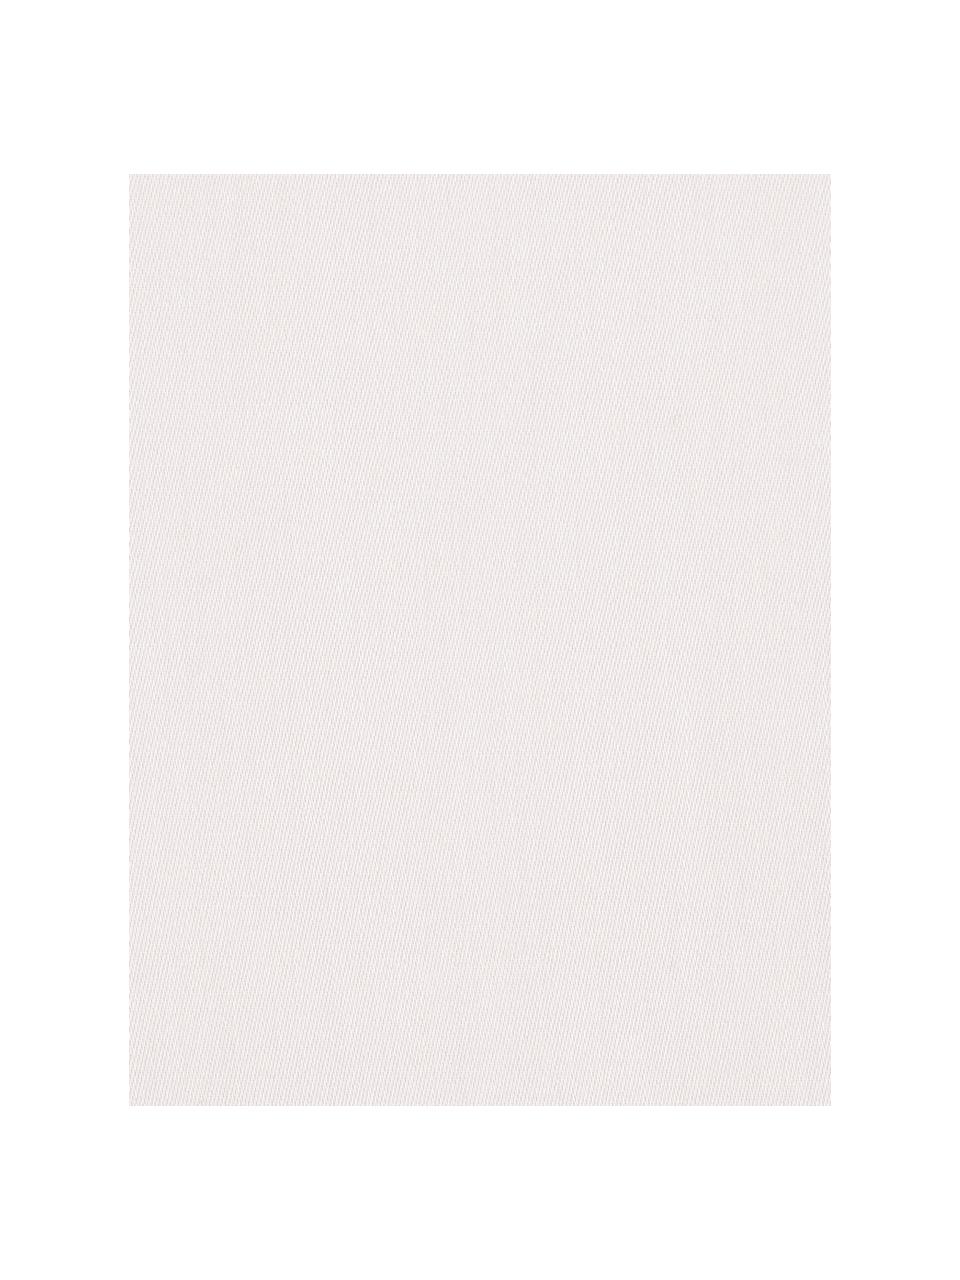 Baumwollsatin-Kissenbezug Comfort in Rosa, 65 x 65 cm, Webart: Satin, leicht glänzend Fa, Rosa, B 65 x L 65 cm